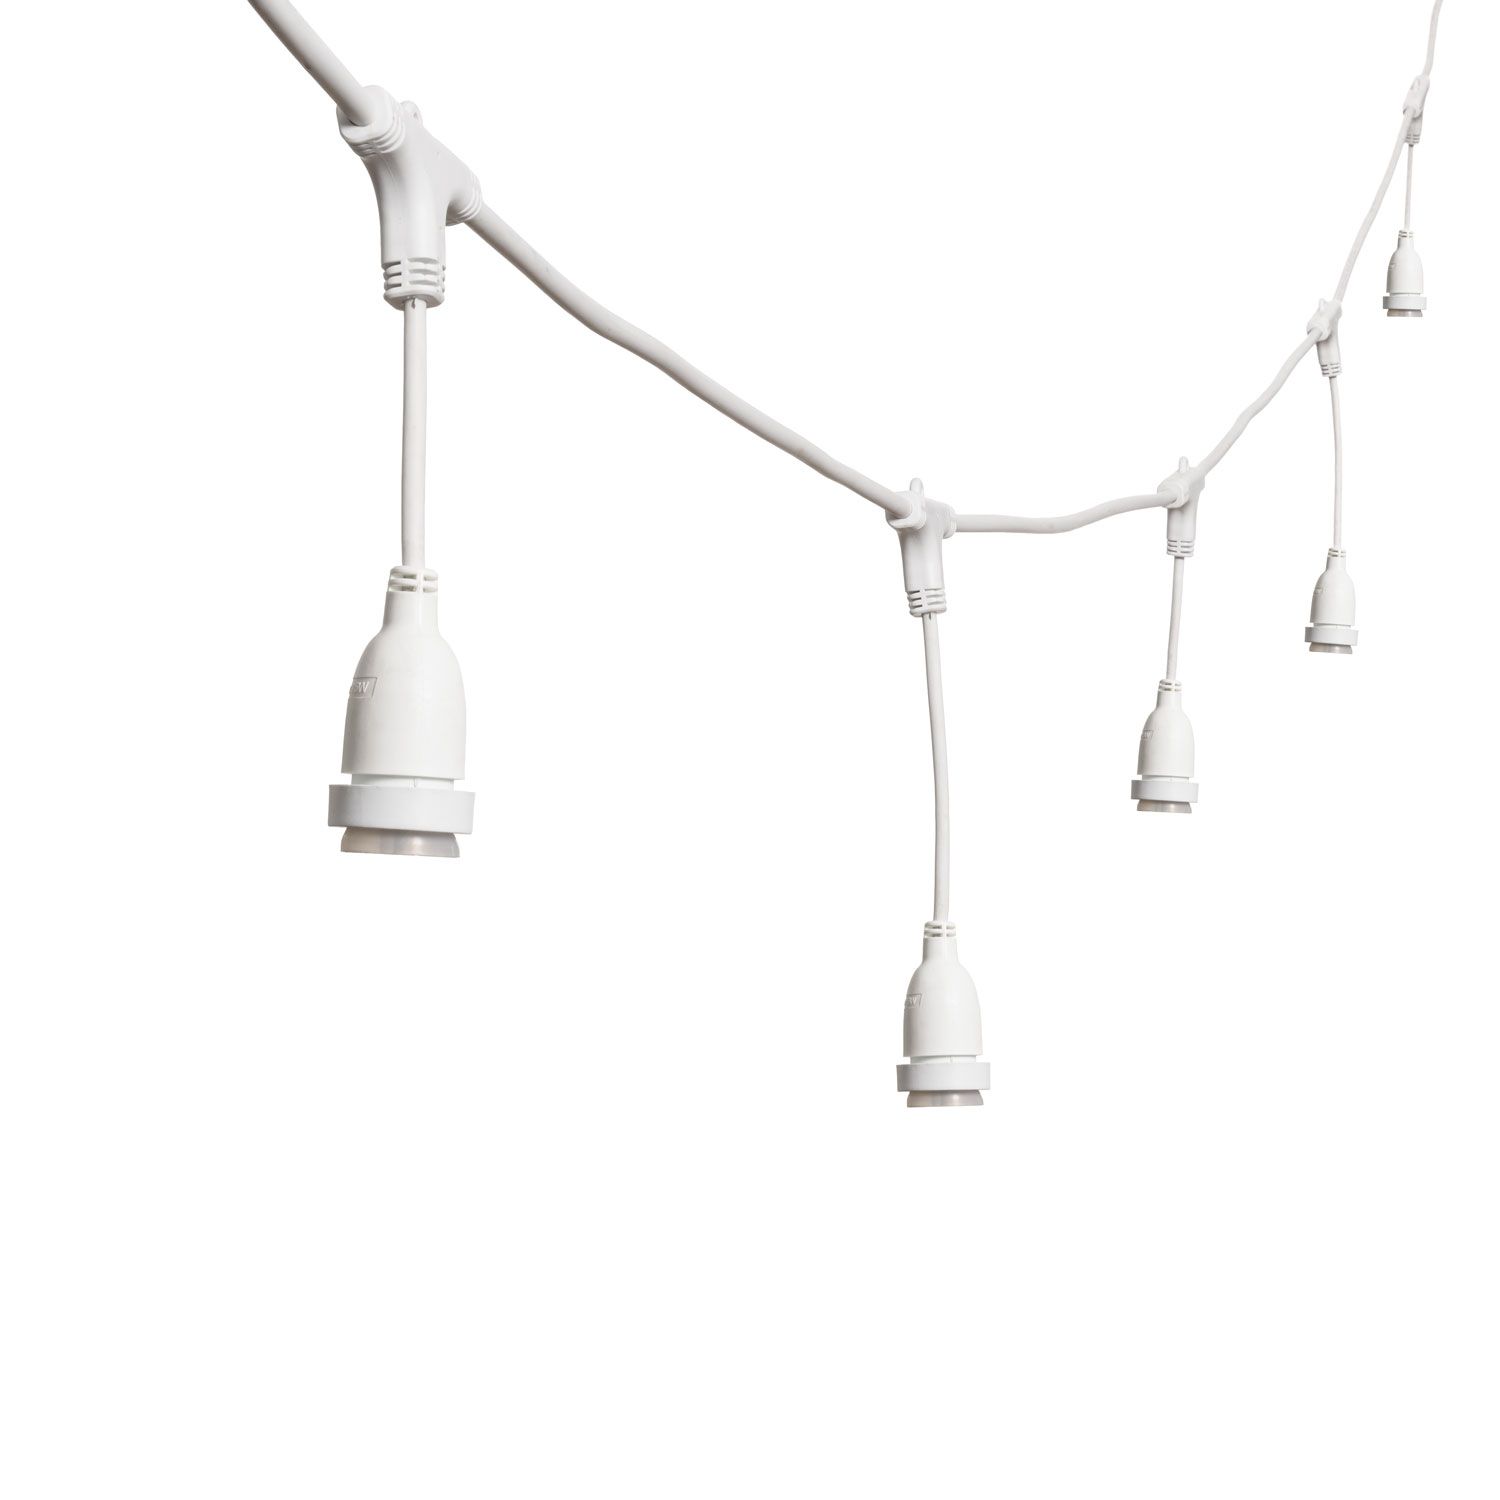 Lichterkette 5 m, 8 hängende E27-Fassungen, h 30 cm, weißes Kabel, erweiterbar